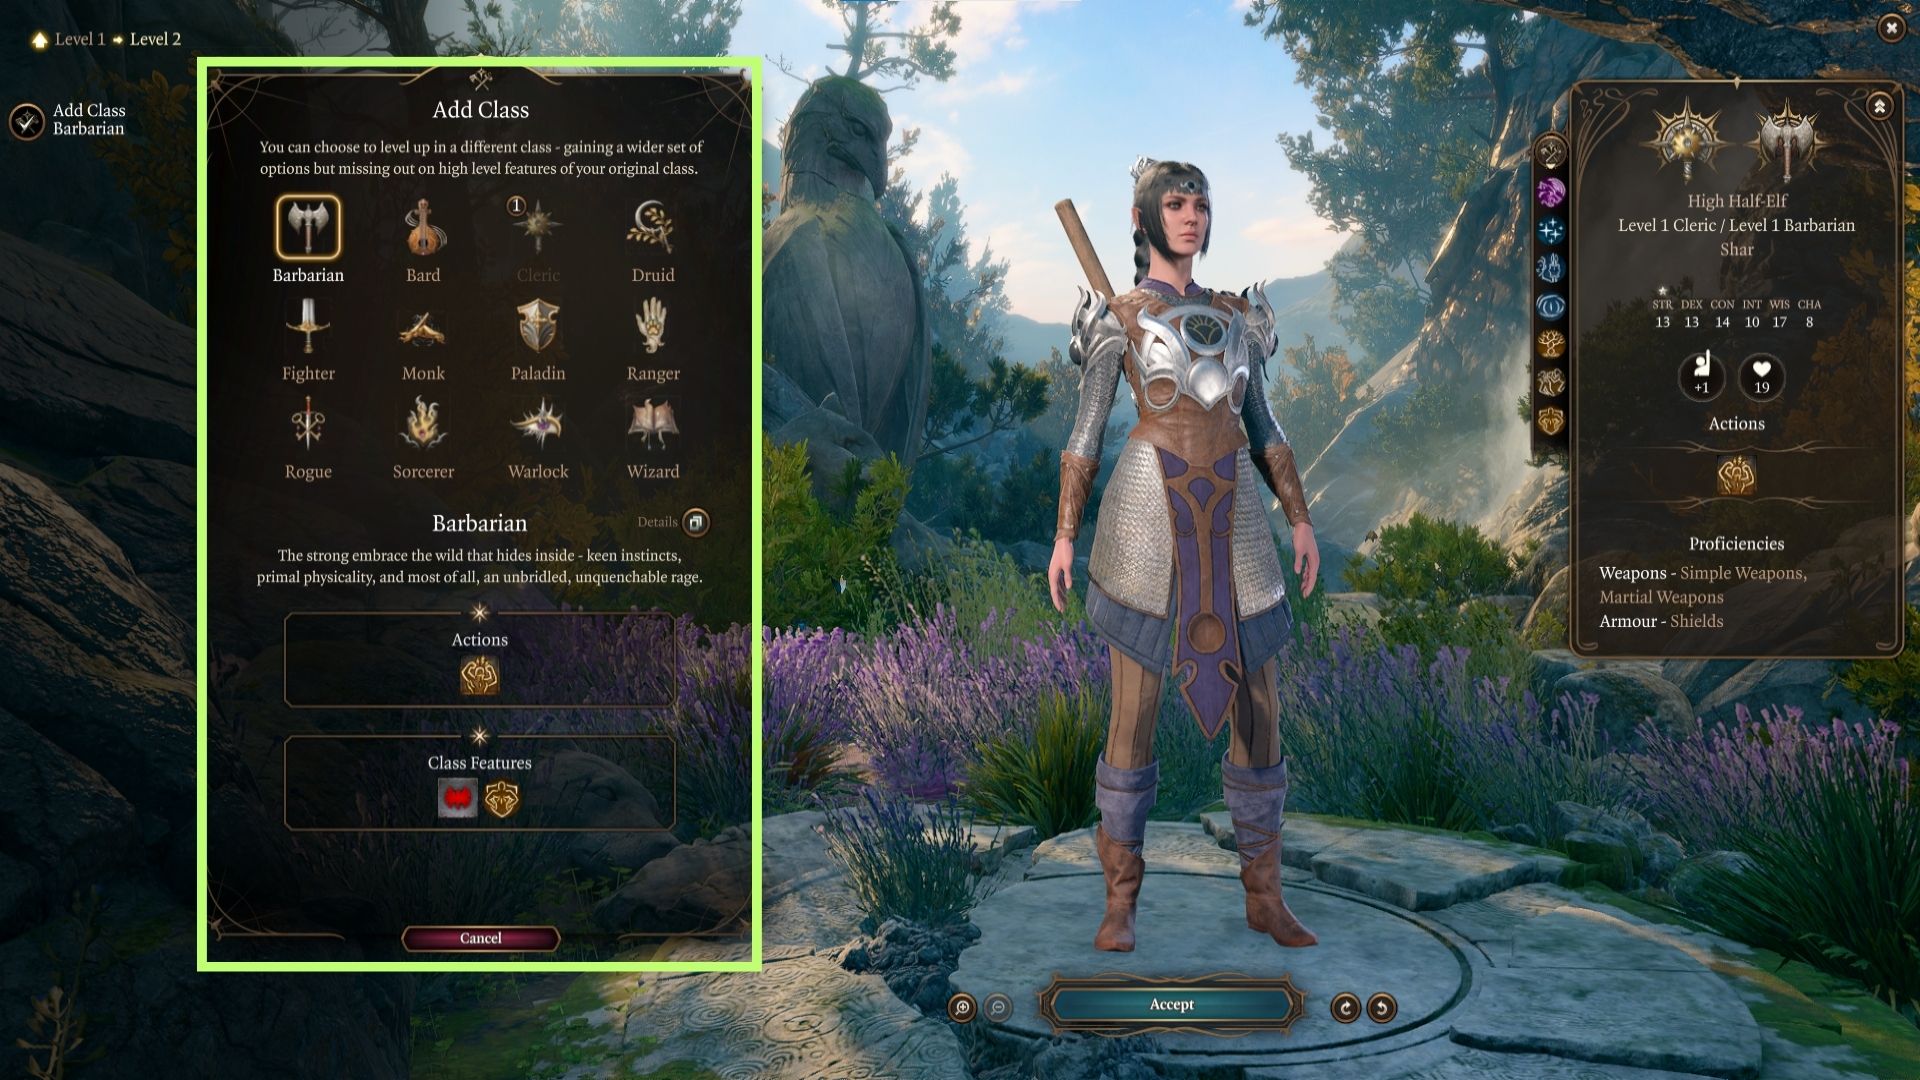 A screenshot of the Add Class window in the level up menu in Baldur's Gate 3. 